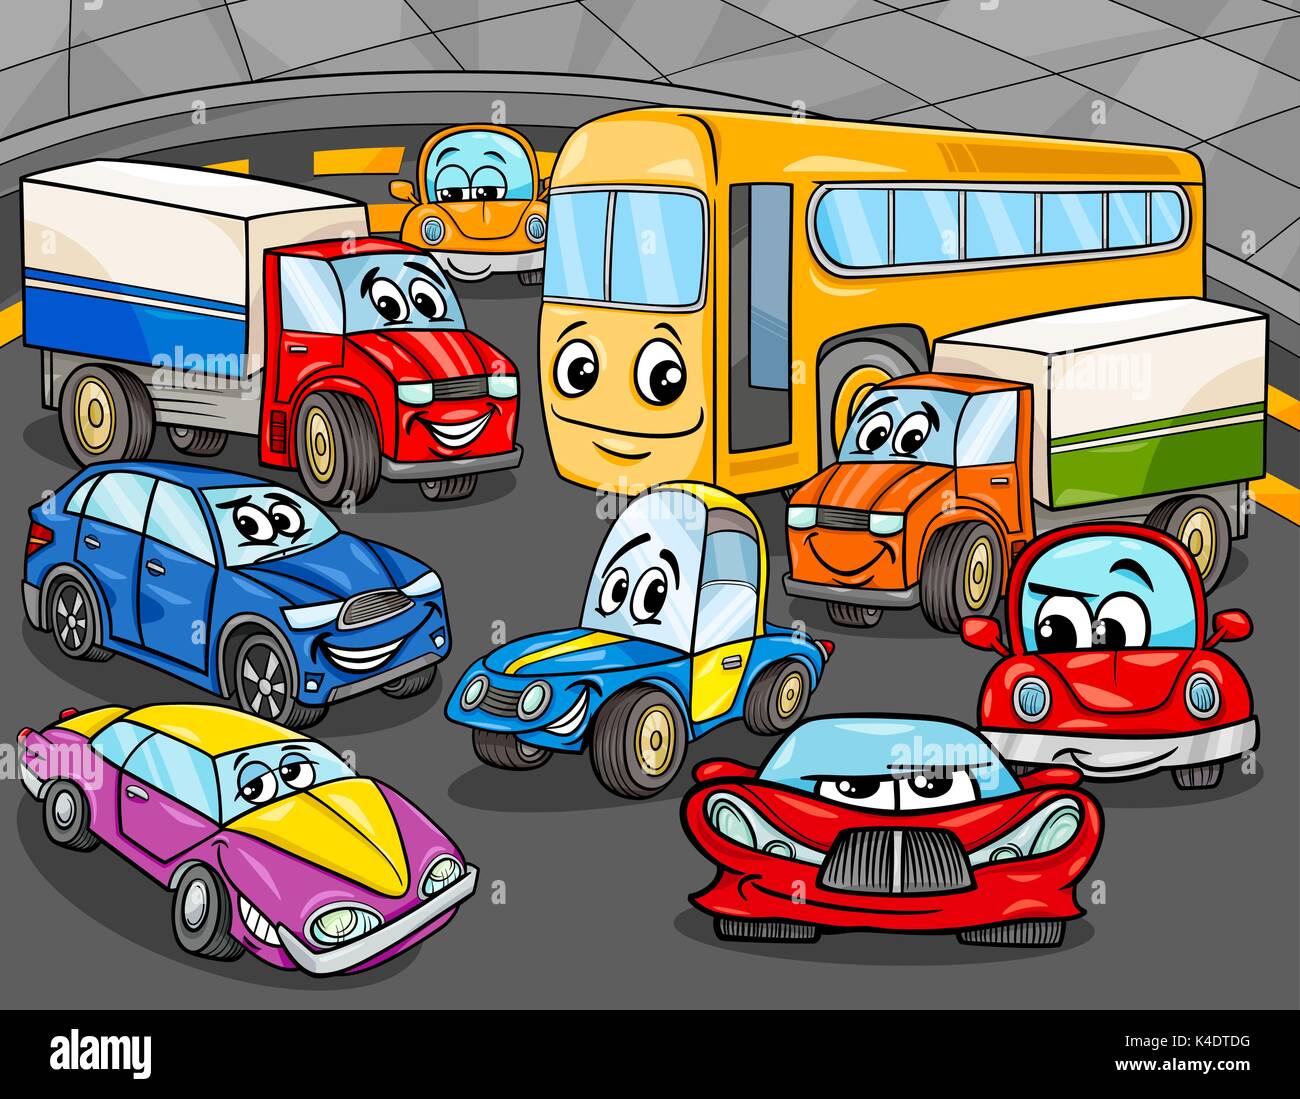 Ilustración de dibujos animados divertidos coches y vehículos del grupo de  caracteres Imagen Vector de stock - Alamy